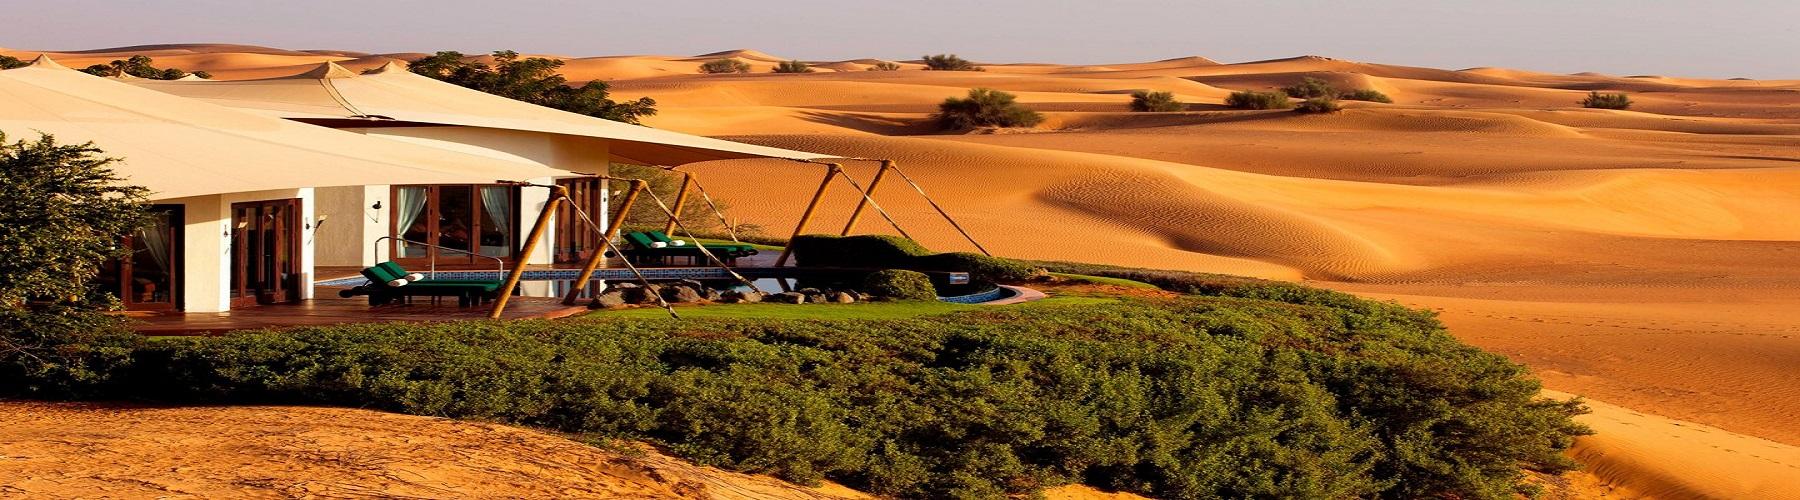 Отель Al Maha A Luxury Collection Desert Resort and Spa ОАЭ